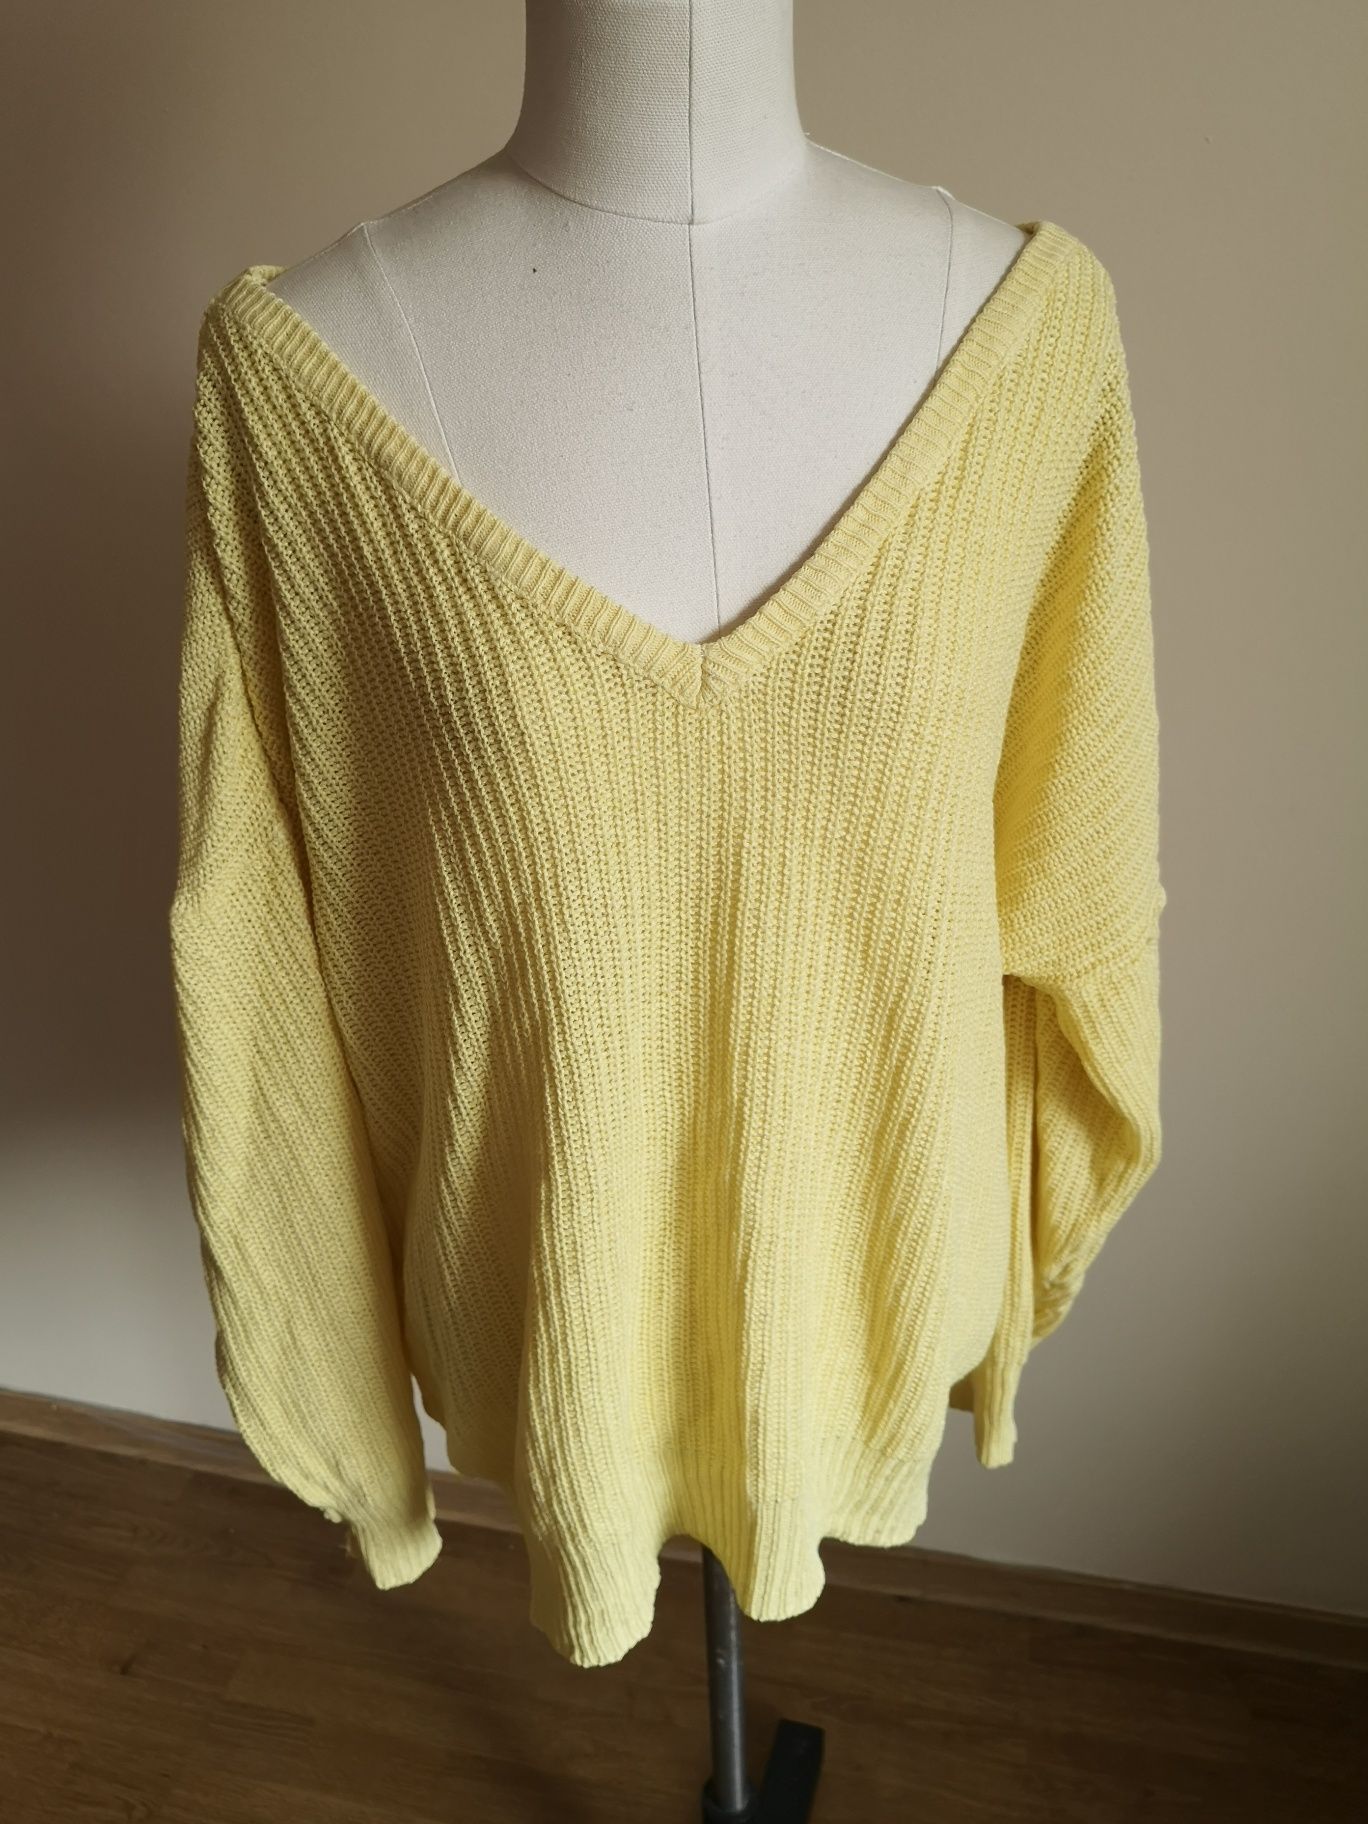 Sweter pleciony narzutka bluza oversize h 40 42 żółta cytrynowa zara